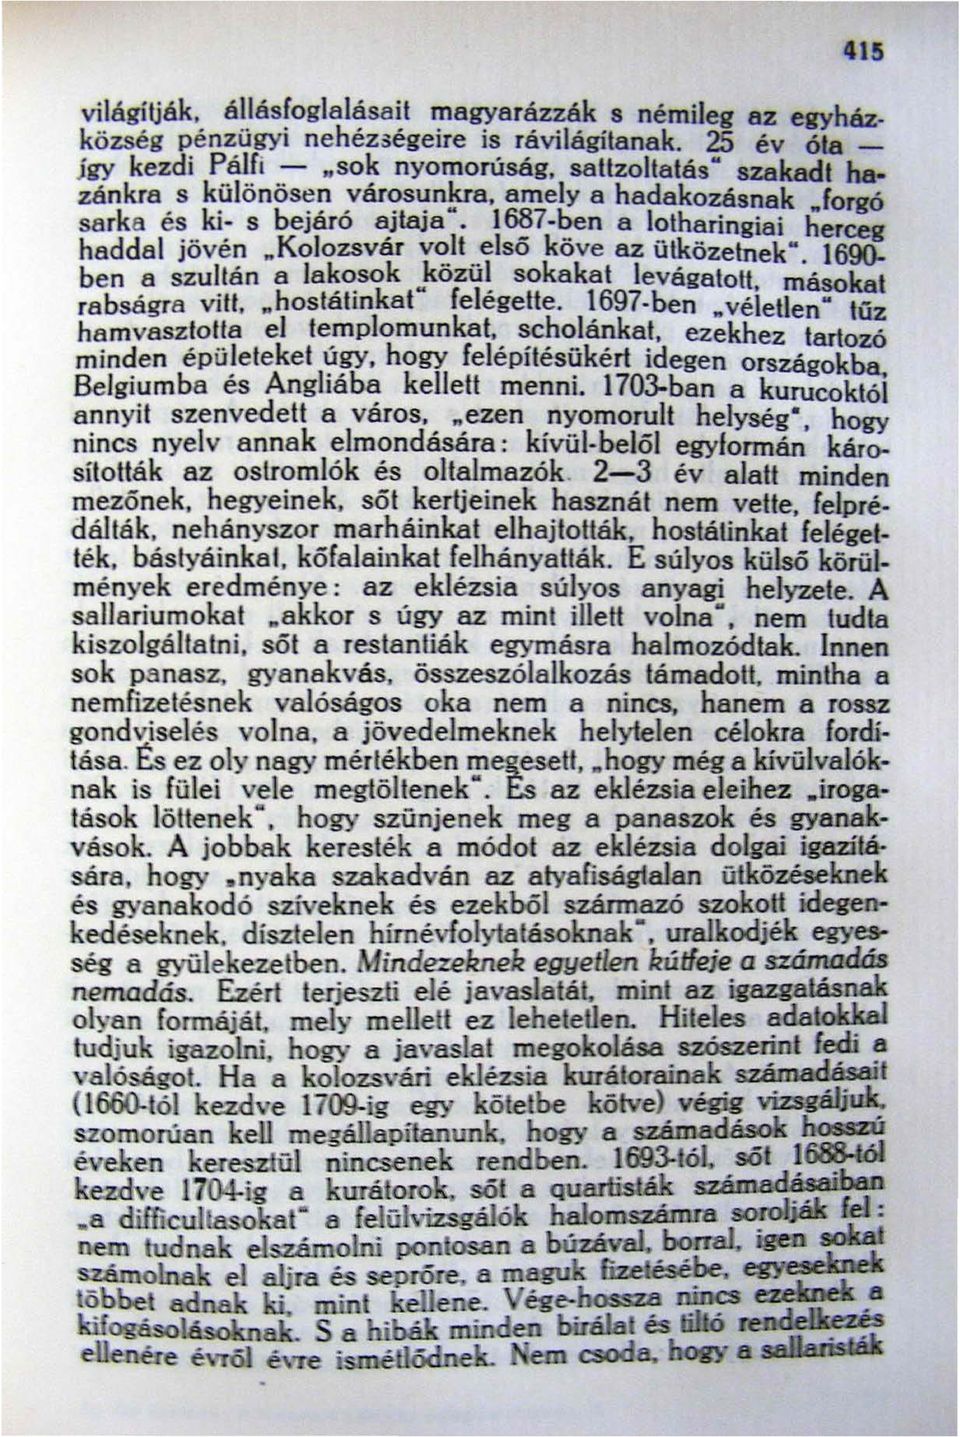 "Kolozsvár volt első köve az ütközetnekm. I ben a szultán a la~~sok "közü~ sokakat levágatott, másokat rabságra viii, "hostahnkat feiegeiie. 1697-ben ftvéletlen" túz hamvasztotta el templomunkat.